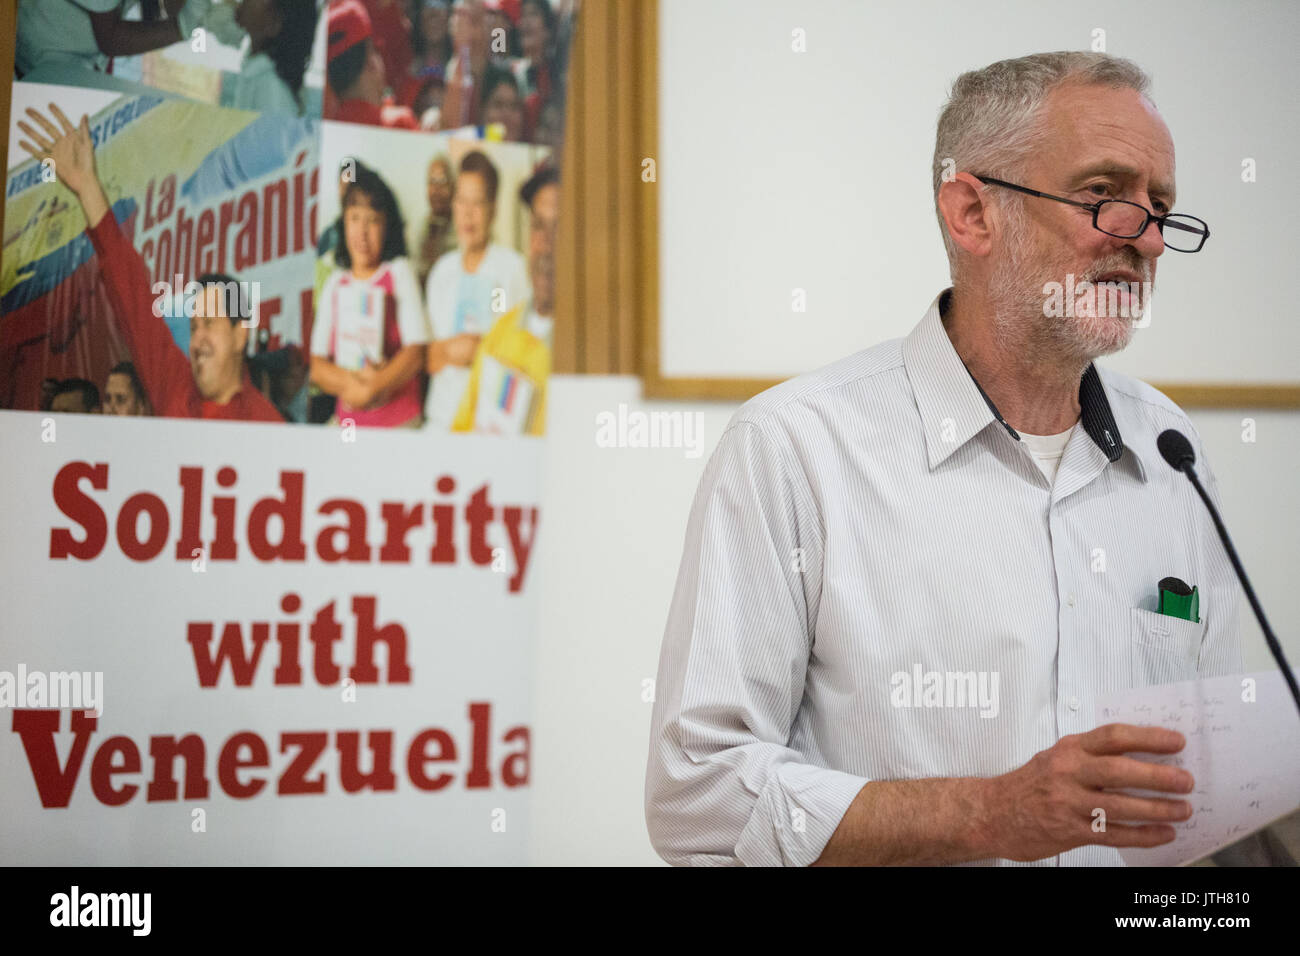 Londres, Reino Unido. El 4 de junio de 2015. Jeremy Corbyn MP, candidato por el liderazgo del Partido Laborista, aborda el Rally por Venezuela en Londres en la celebración de los 10 años de la Campaña de Solidaridad con Venezuela. Crédito: Mark Kerrison/Alamy Live News Foto de stock